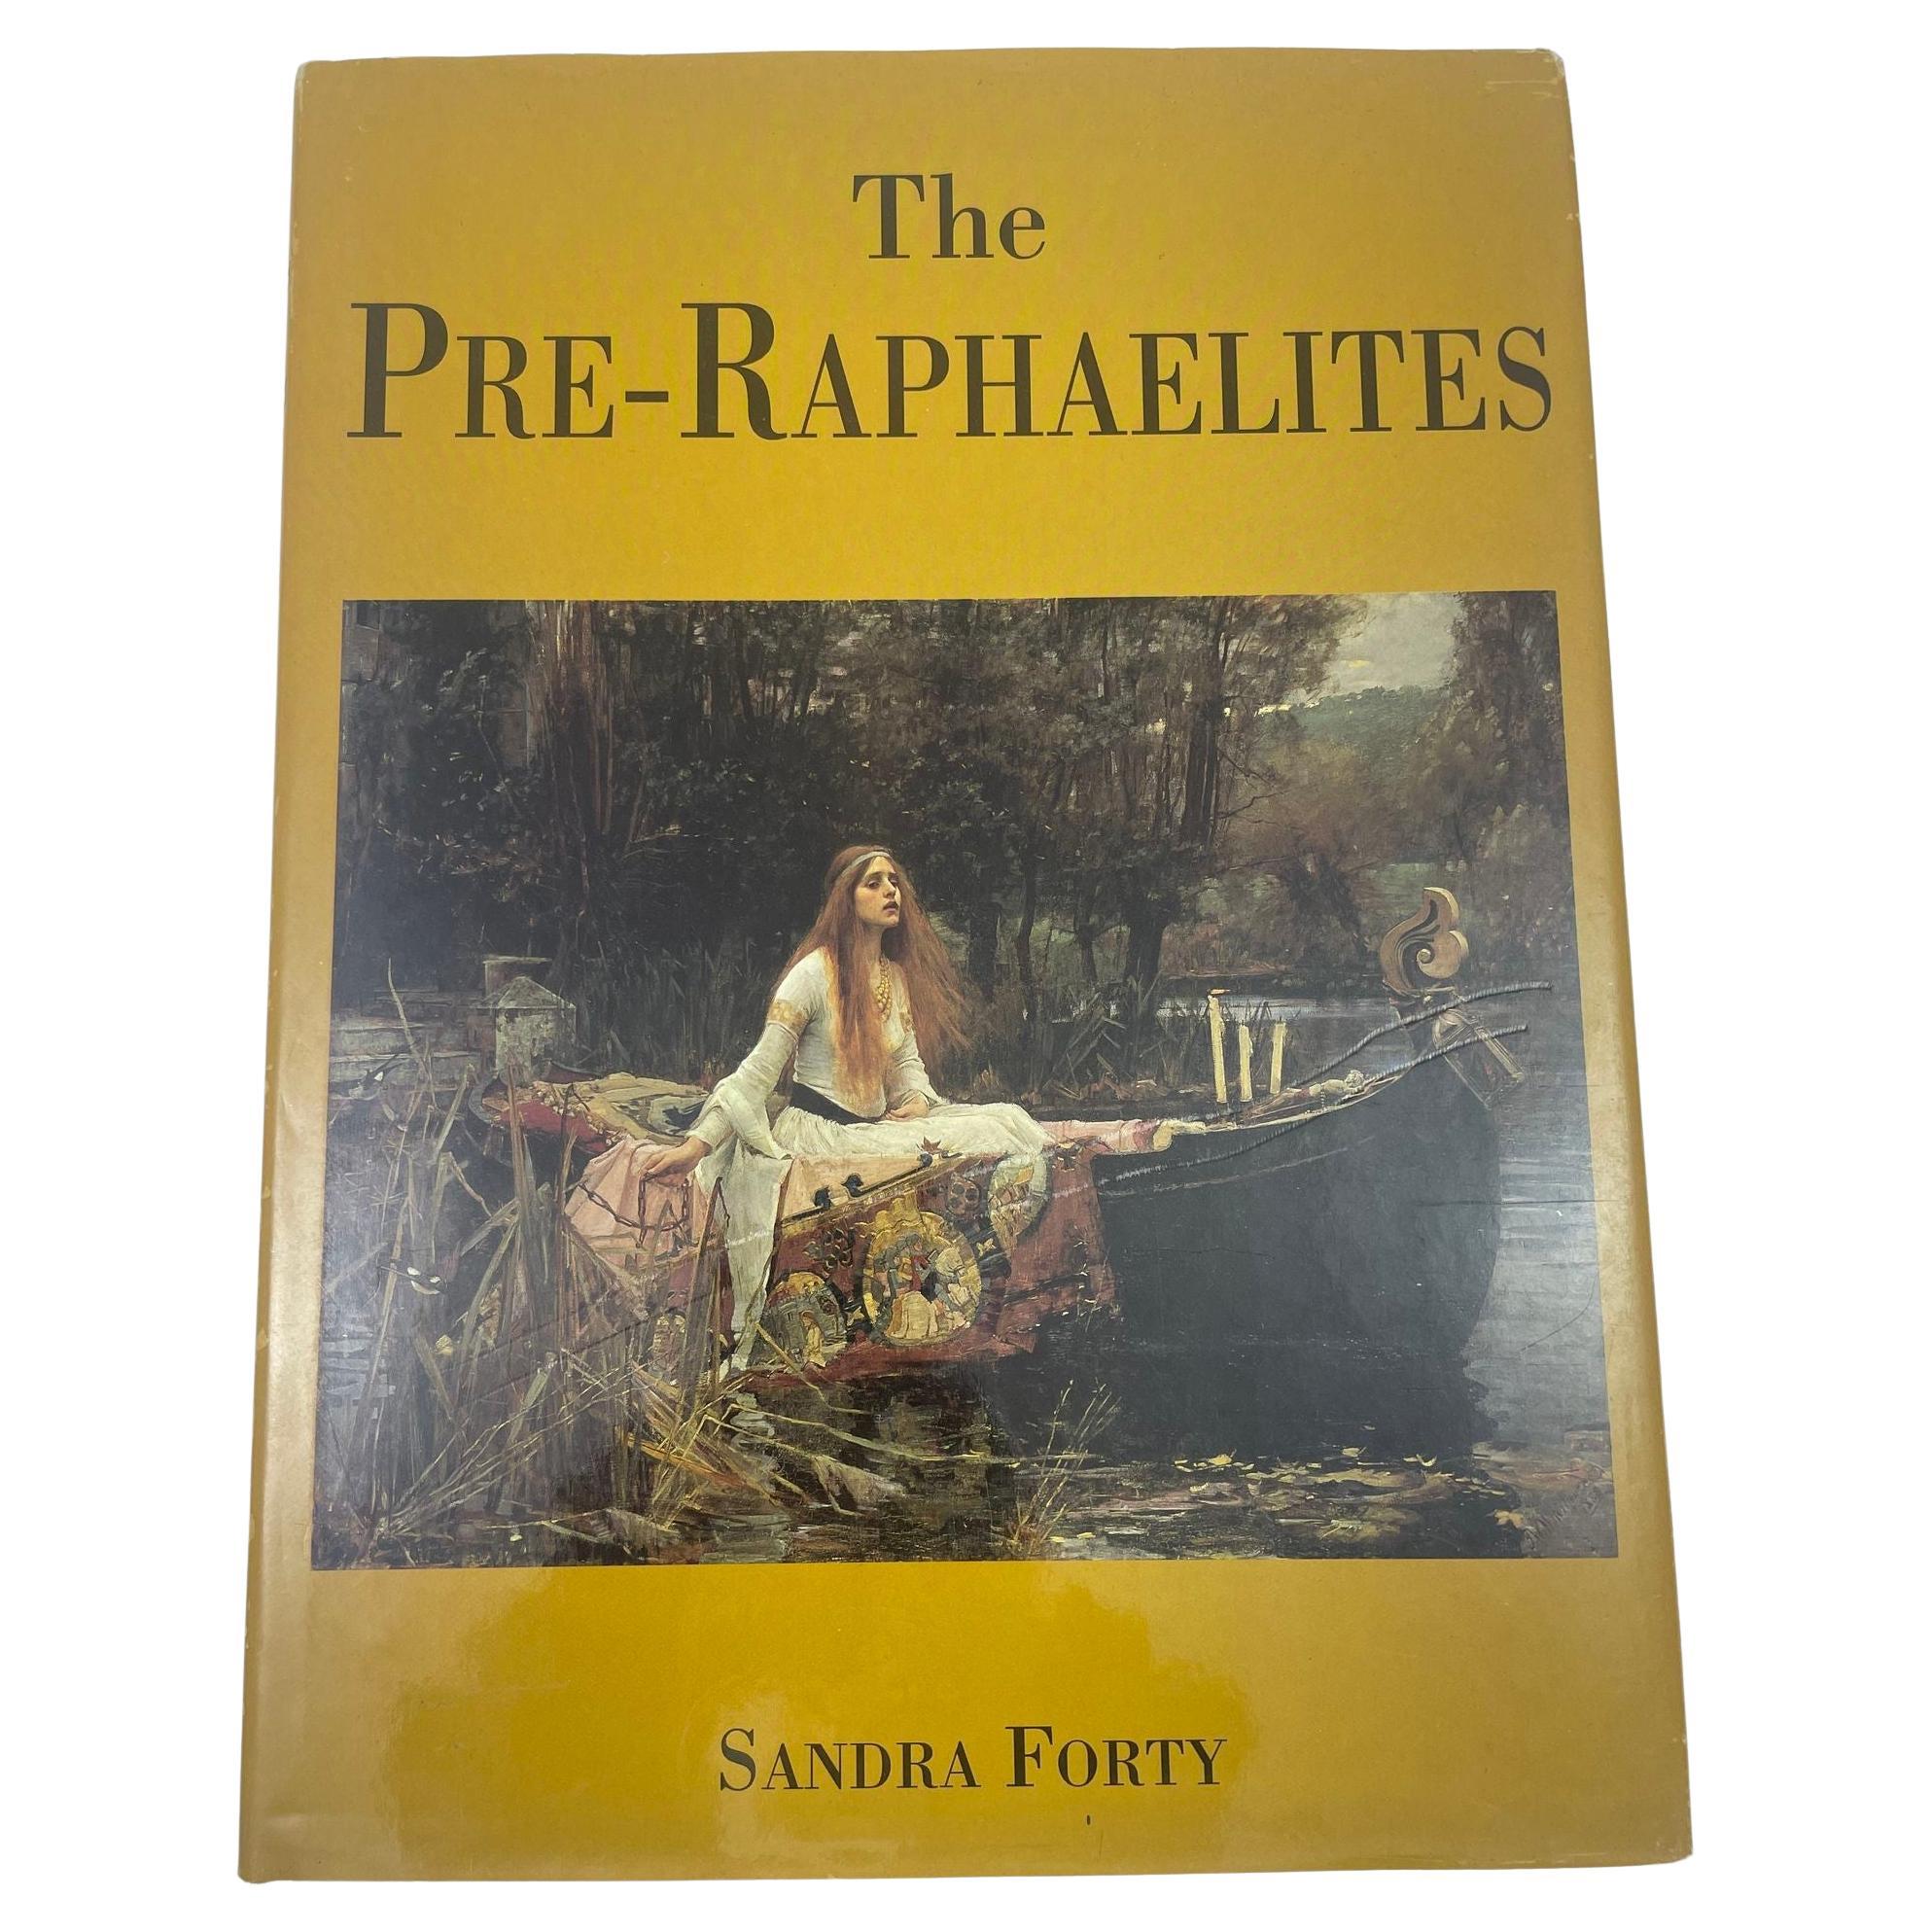 The Pre-Raphaelites von Sandra Forty, Hardcoverbuch, 1. Auflage, 1997